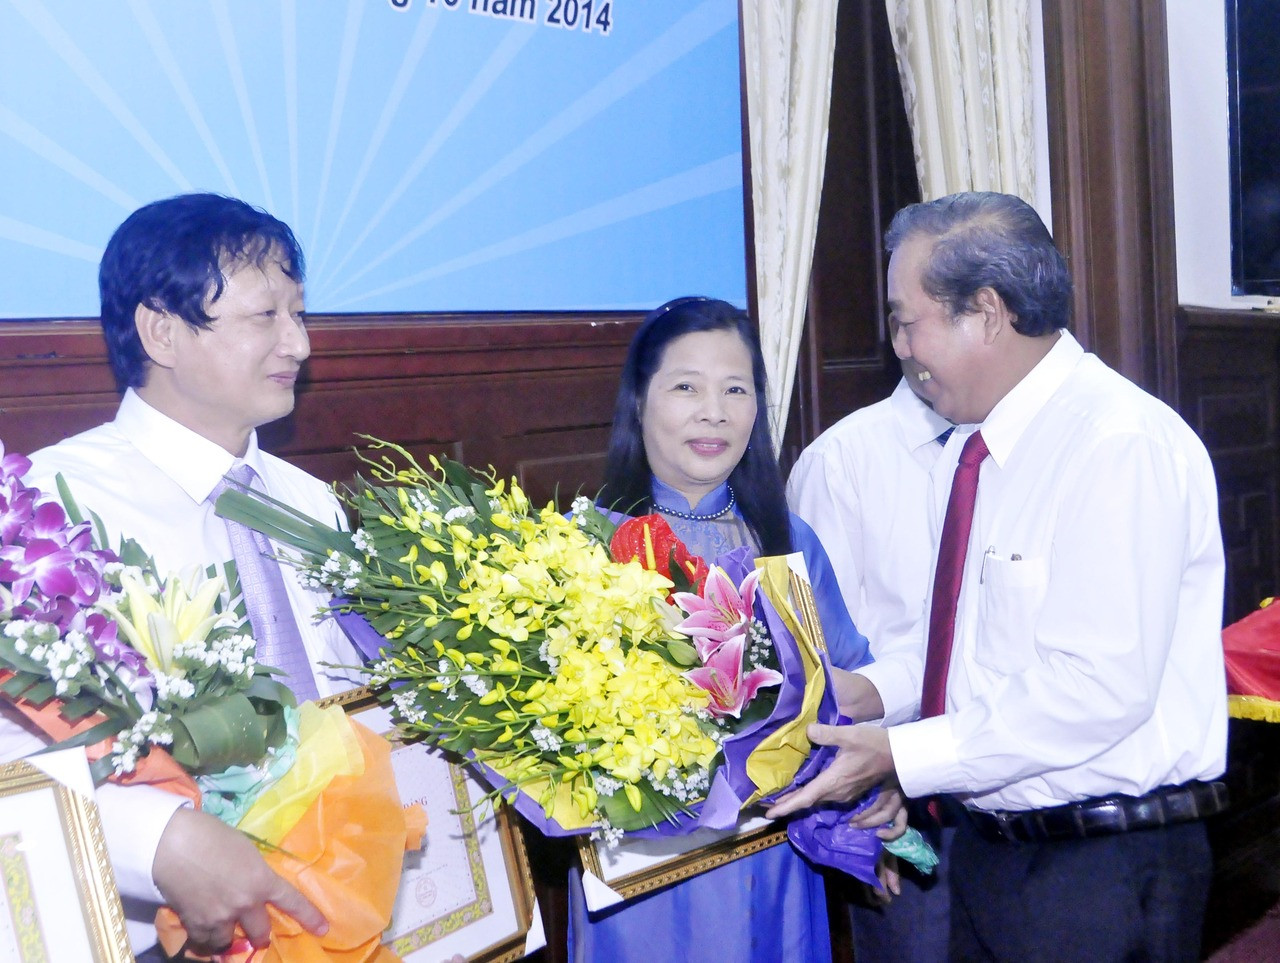 Đảng ủy TANDTC trao tặng Huy hiệu 30, 40 năm tuổi Đảng cho 5 đảng viên